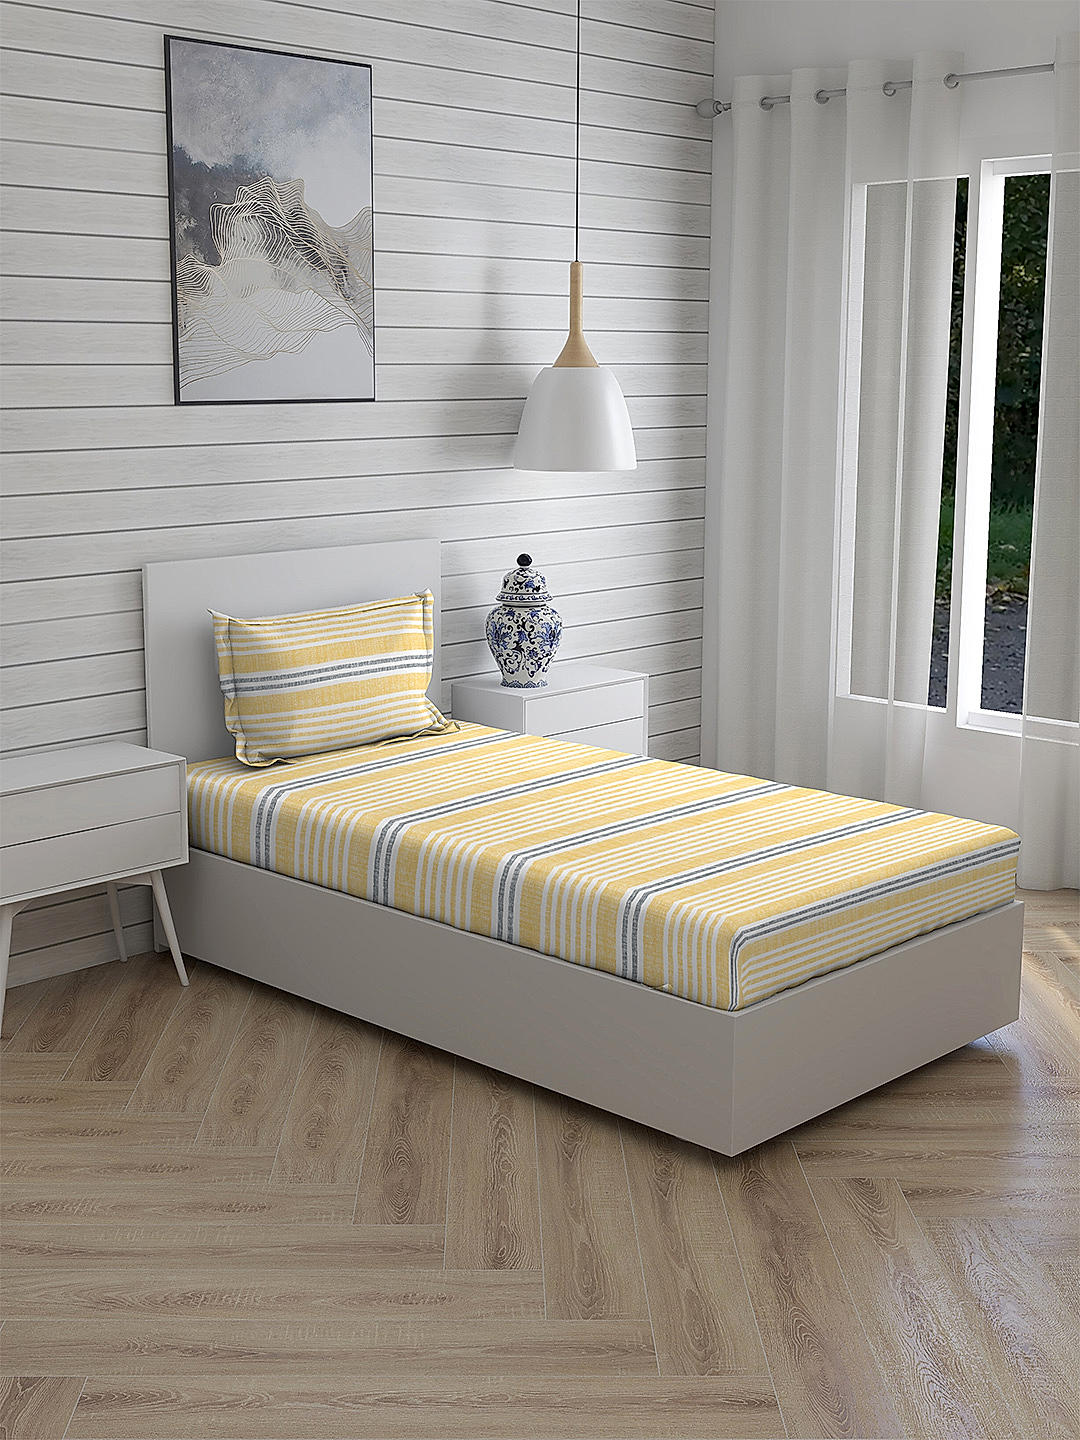 Iris Gaze-1 100% cotton Fine Yellow Colored Stripes Print Single Bed Sheet Set